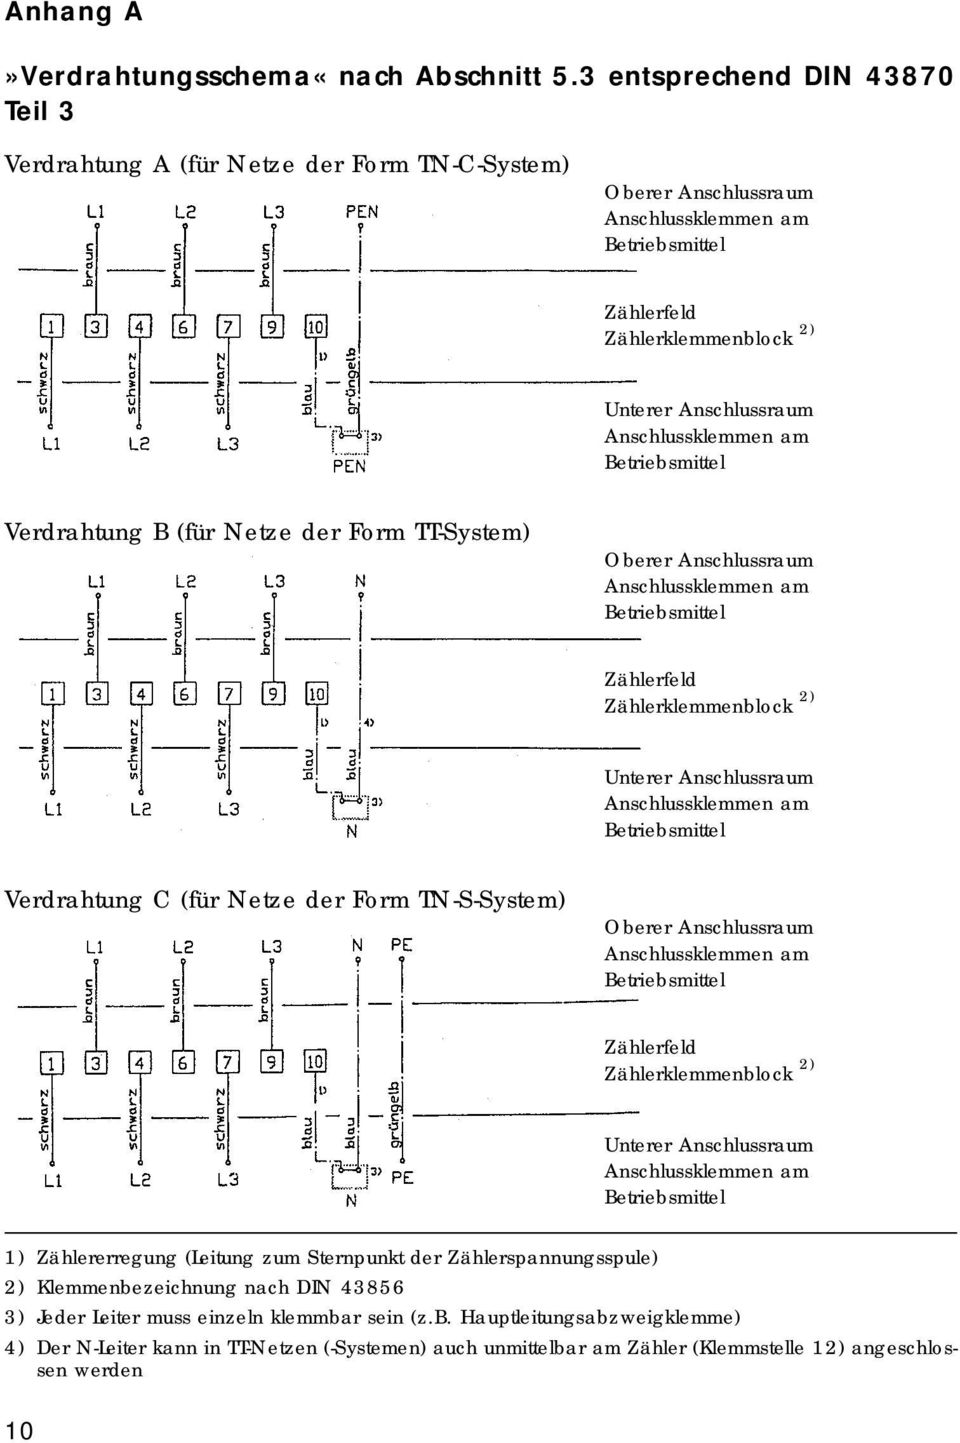 Anschlussklemmen am Betriebsmittel Verdrahtung B (für Netze der Form TT-System) Oberer Anschlussraum Anschlussklemmen am Betriebsmittel Zählerfeld Zählerklemmenblock 2) Unterer Anschlussraum